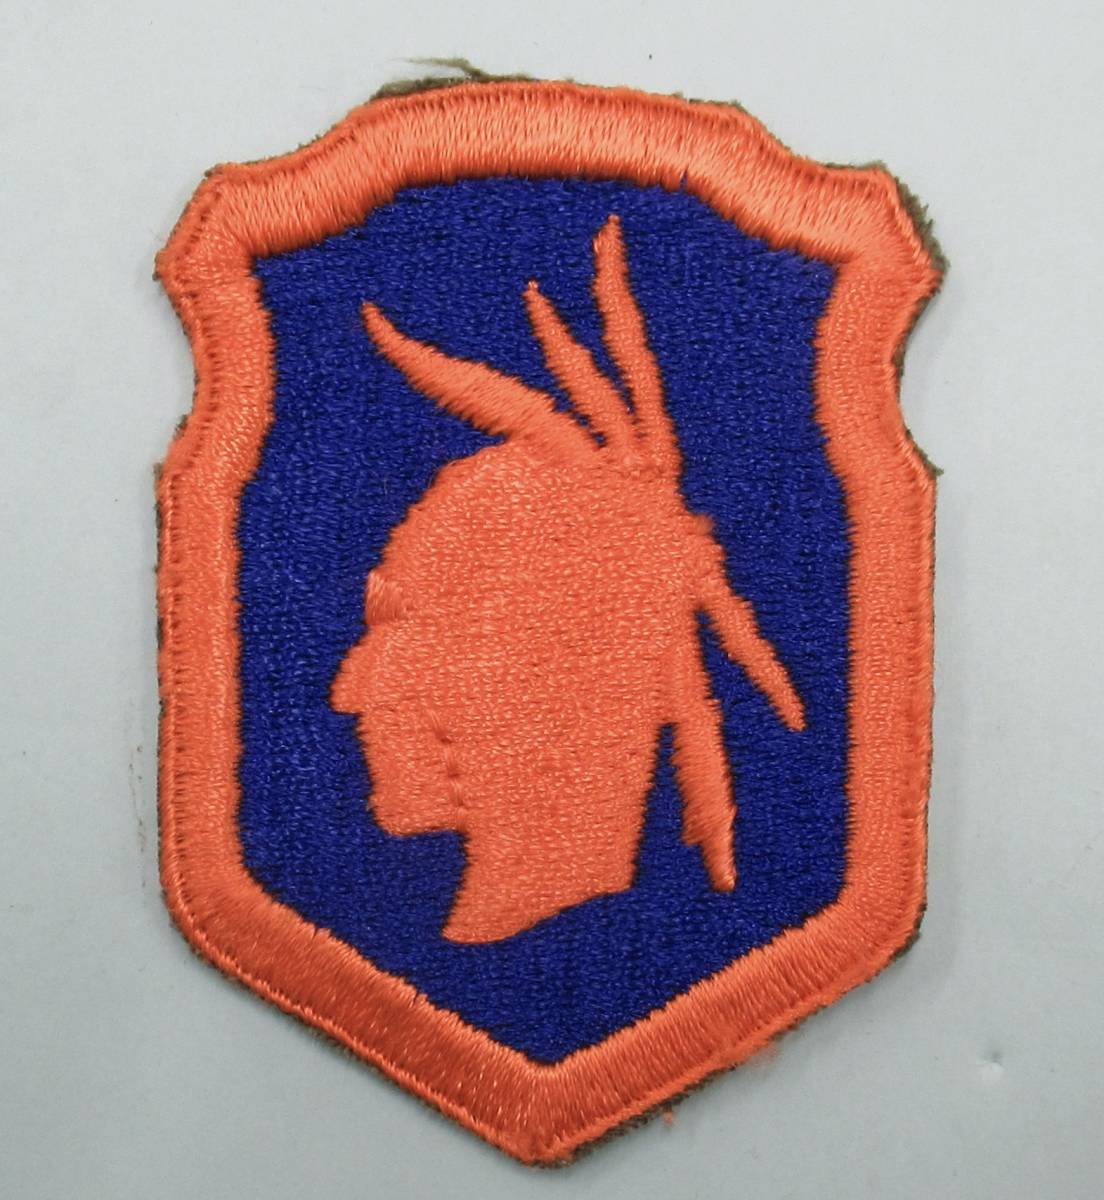 実物 WW2 米陸軍 第98歩兵師団 肩章 US ARMY 98TH INFANTRY DIVISION SHOULDER PATCHE エッジカット 2_画像1